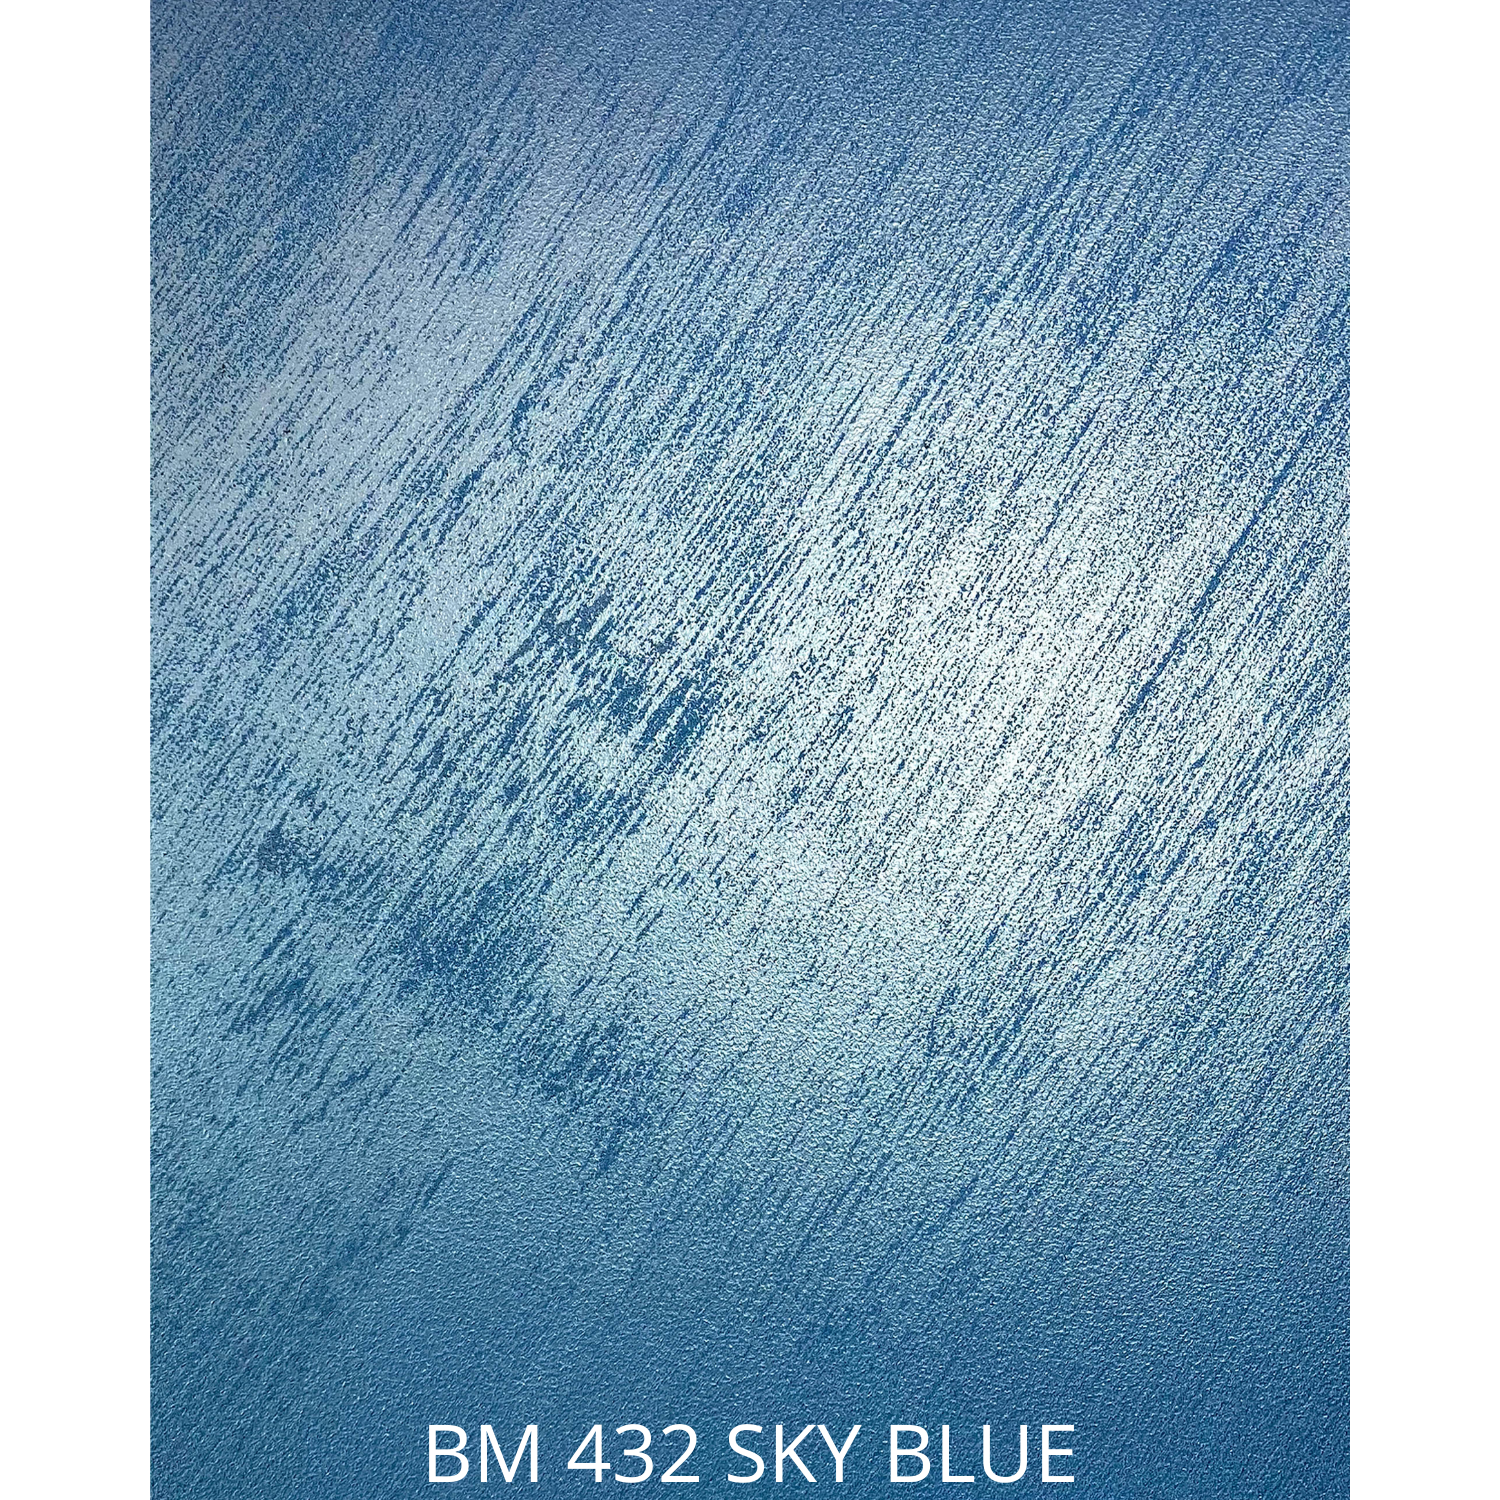 BM 422 STORM BLUE